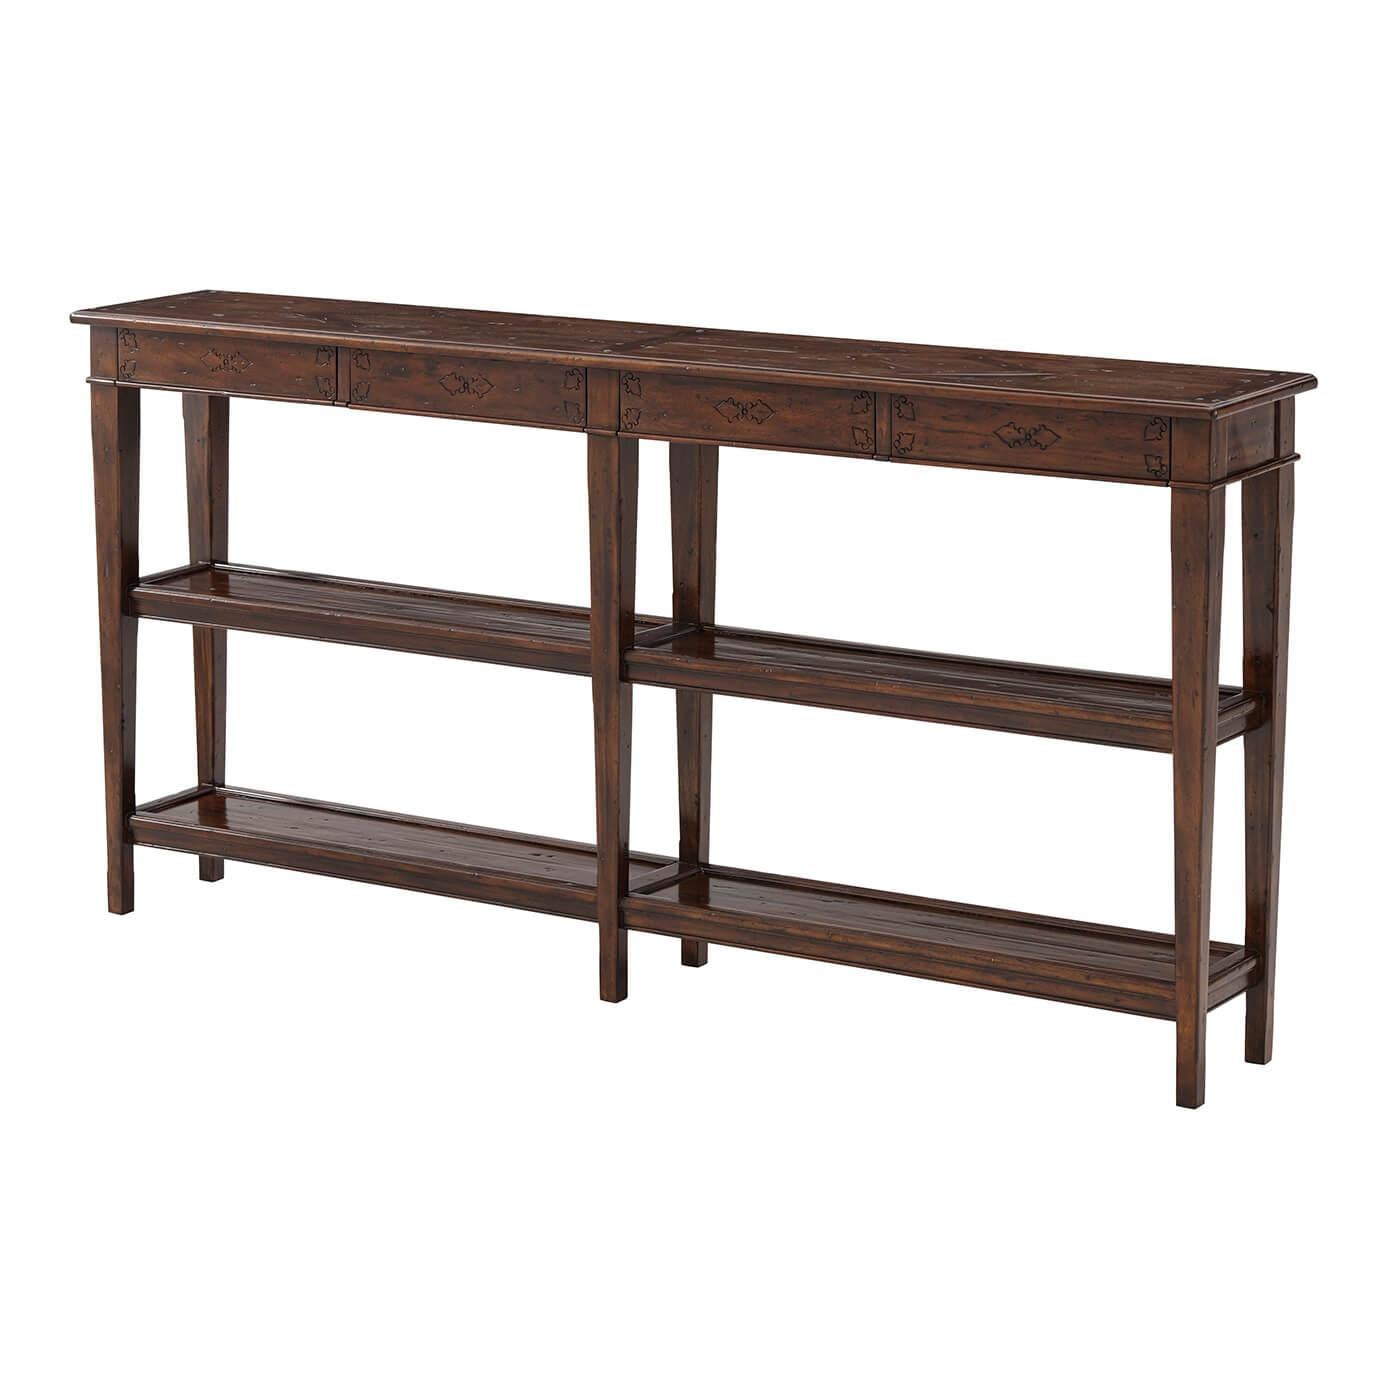 Table console en bois vieilli, avec quatre tiroirs en frise et deux autres niveaux entre des supports carrés effilés. Le provincial français original.

Dimensions : 72